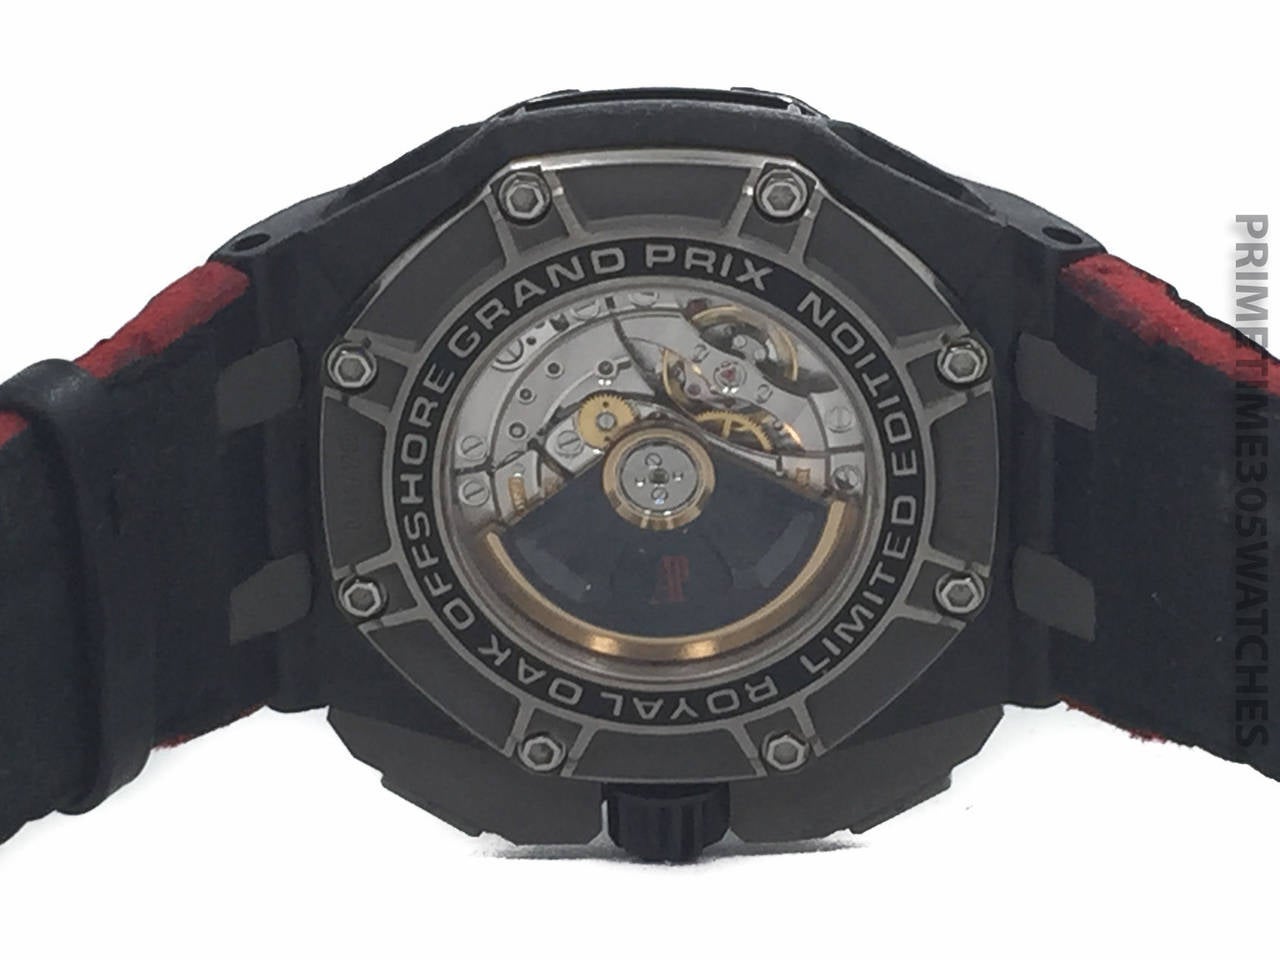 Audemars Piguet Forged Carbon Royal Oak Offshore Grand Prix Wristwatch 1